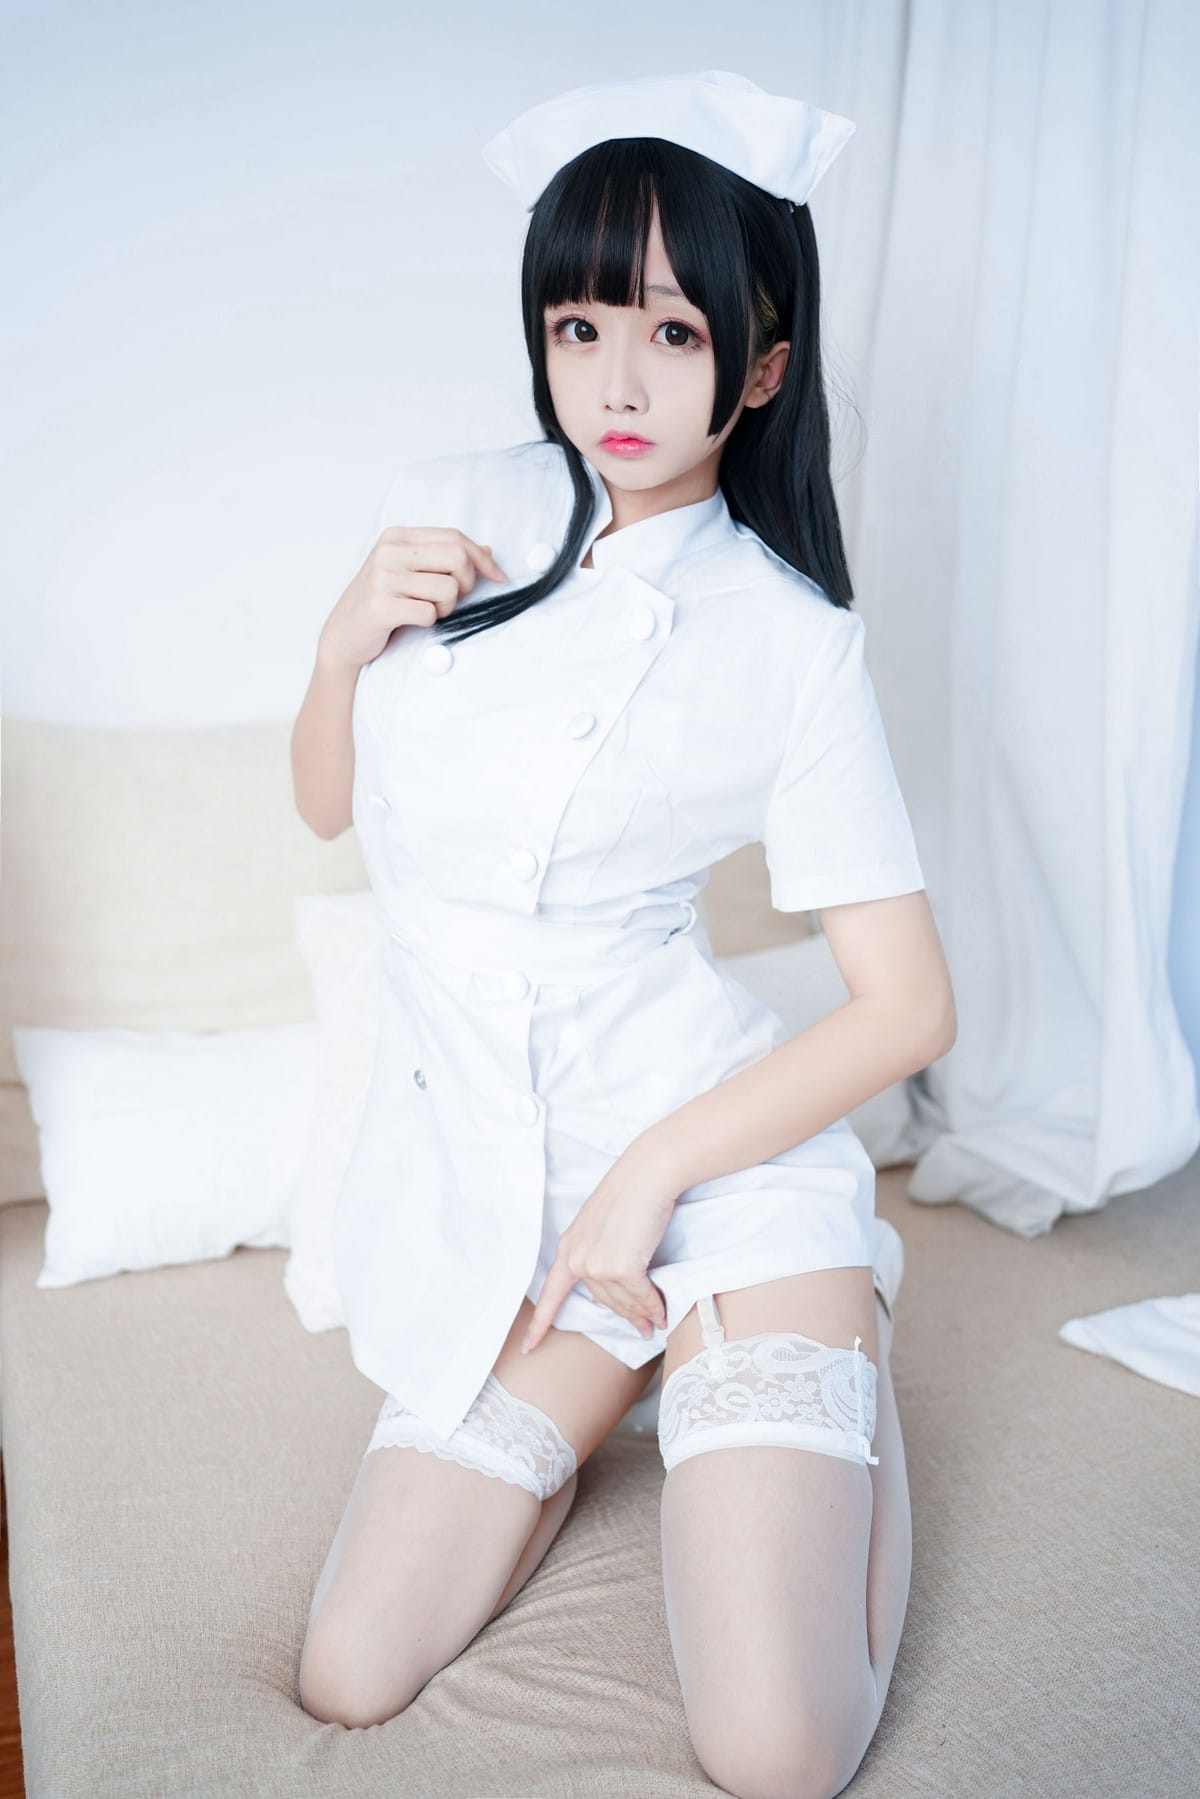 动漫博主日奈娇纯白护士装搭配白丝吊袜私房半脱写真